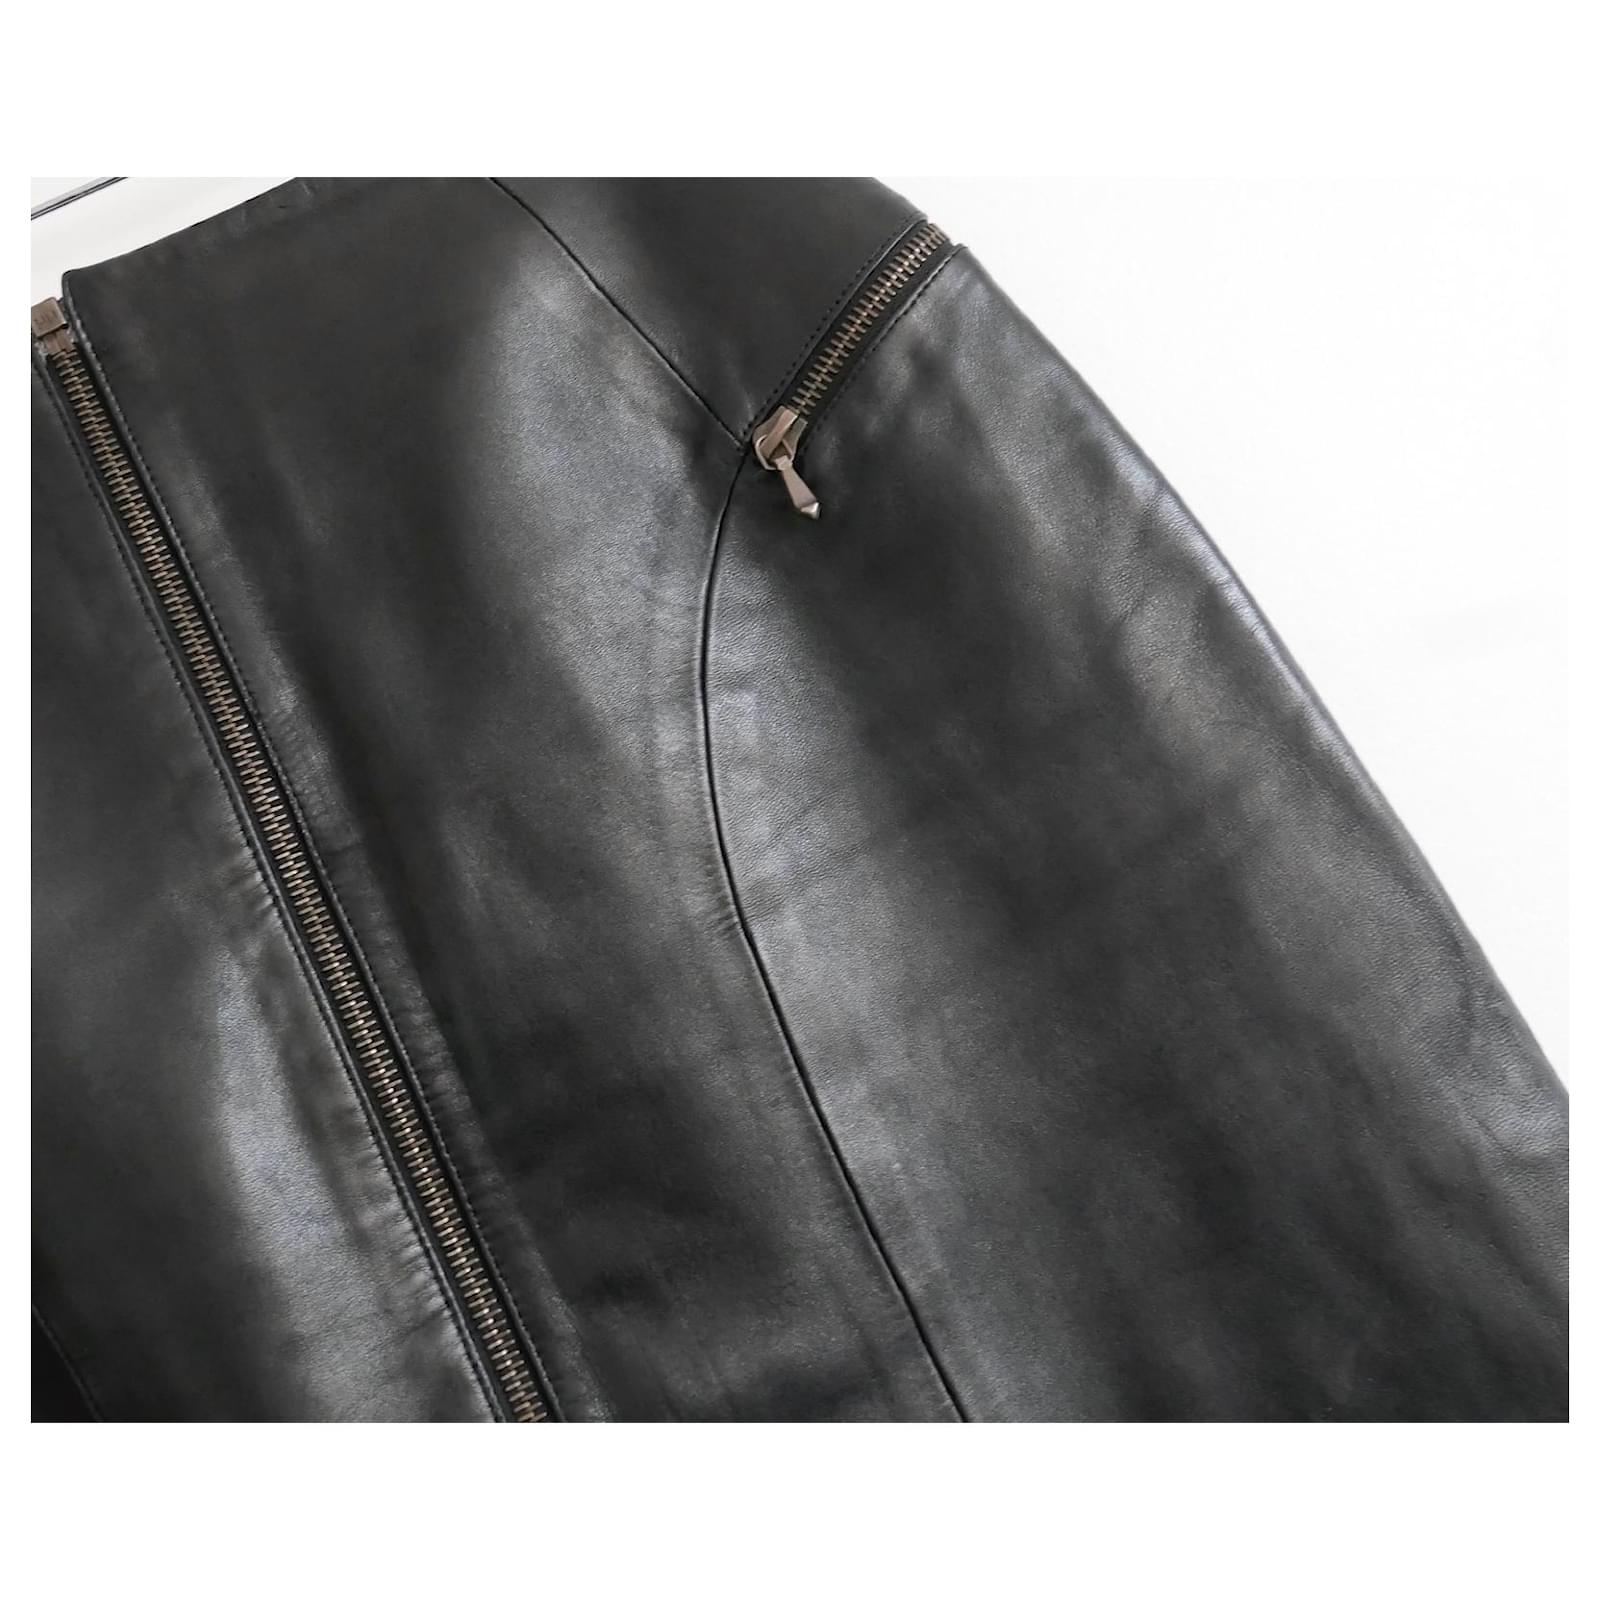 Fabuleuse et rare jupe en cuir vintage Christian Dior de la collection Automne 2000 (look 4 sur le défilé). Porté une fois. 
Fabriqué en cuir d'agneau noir super doux et lisse, avec une doublure en soie noire et des ferrures en or mat d'aspect